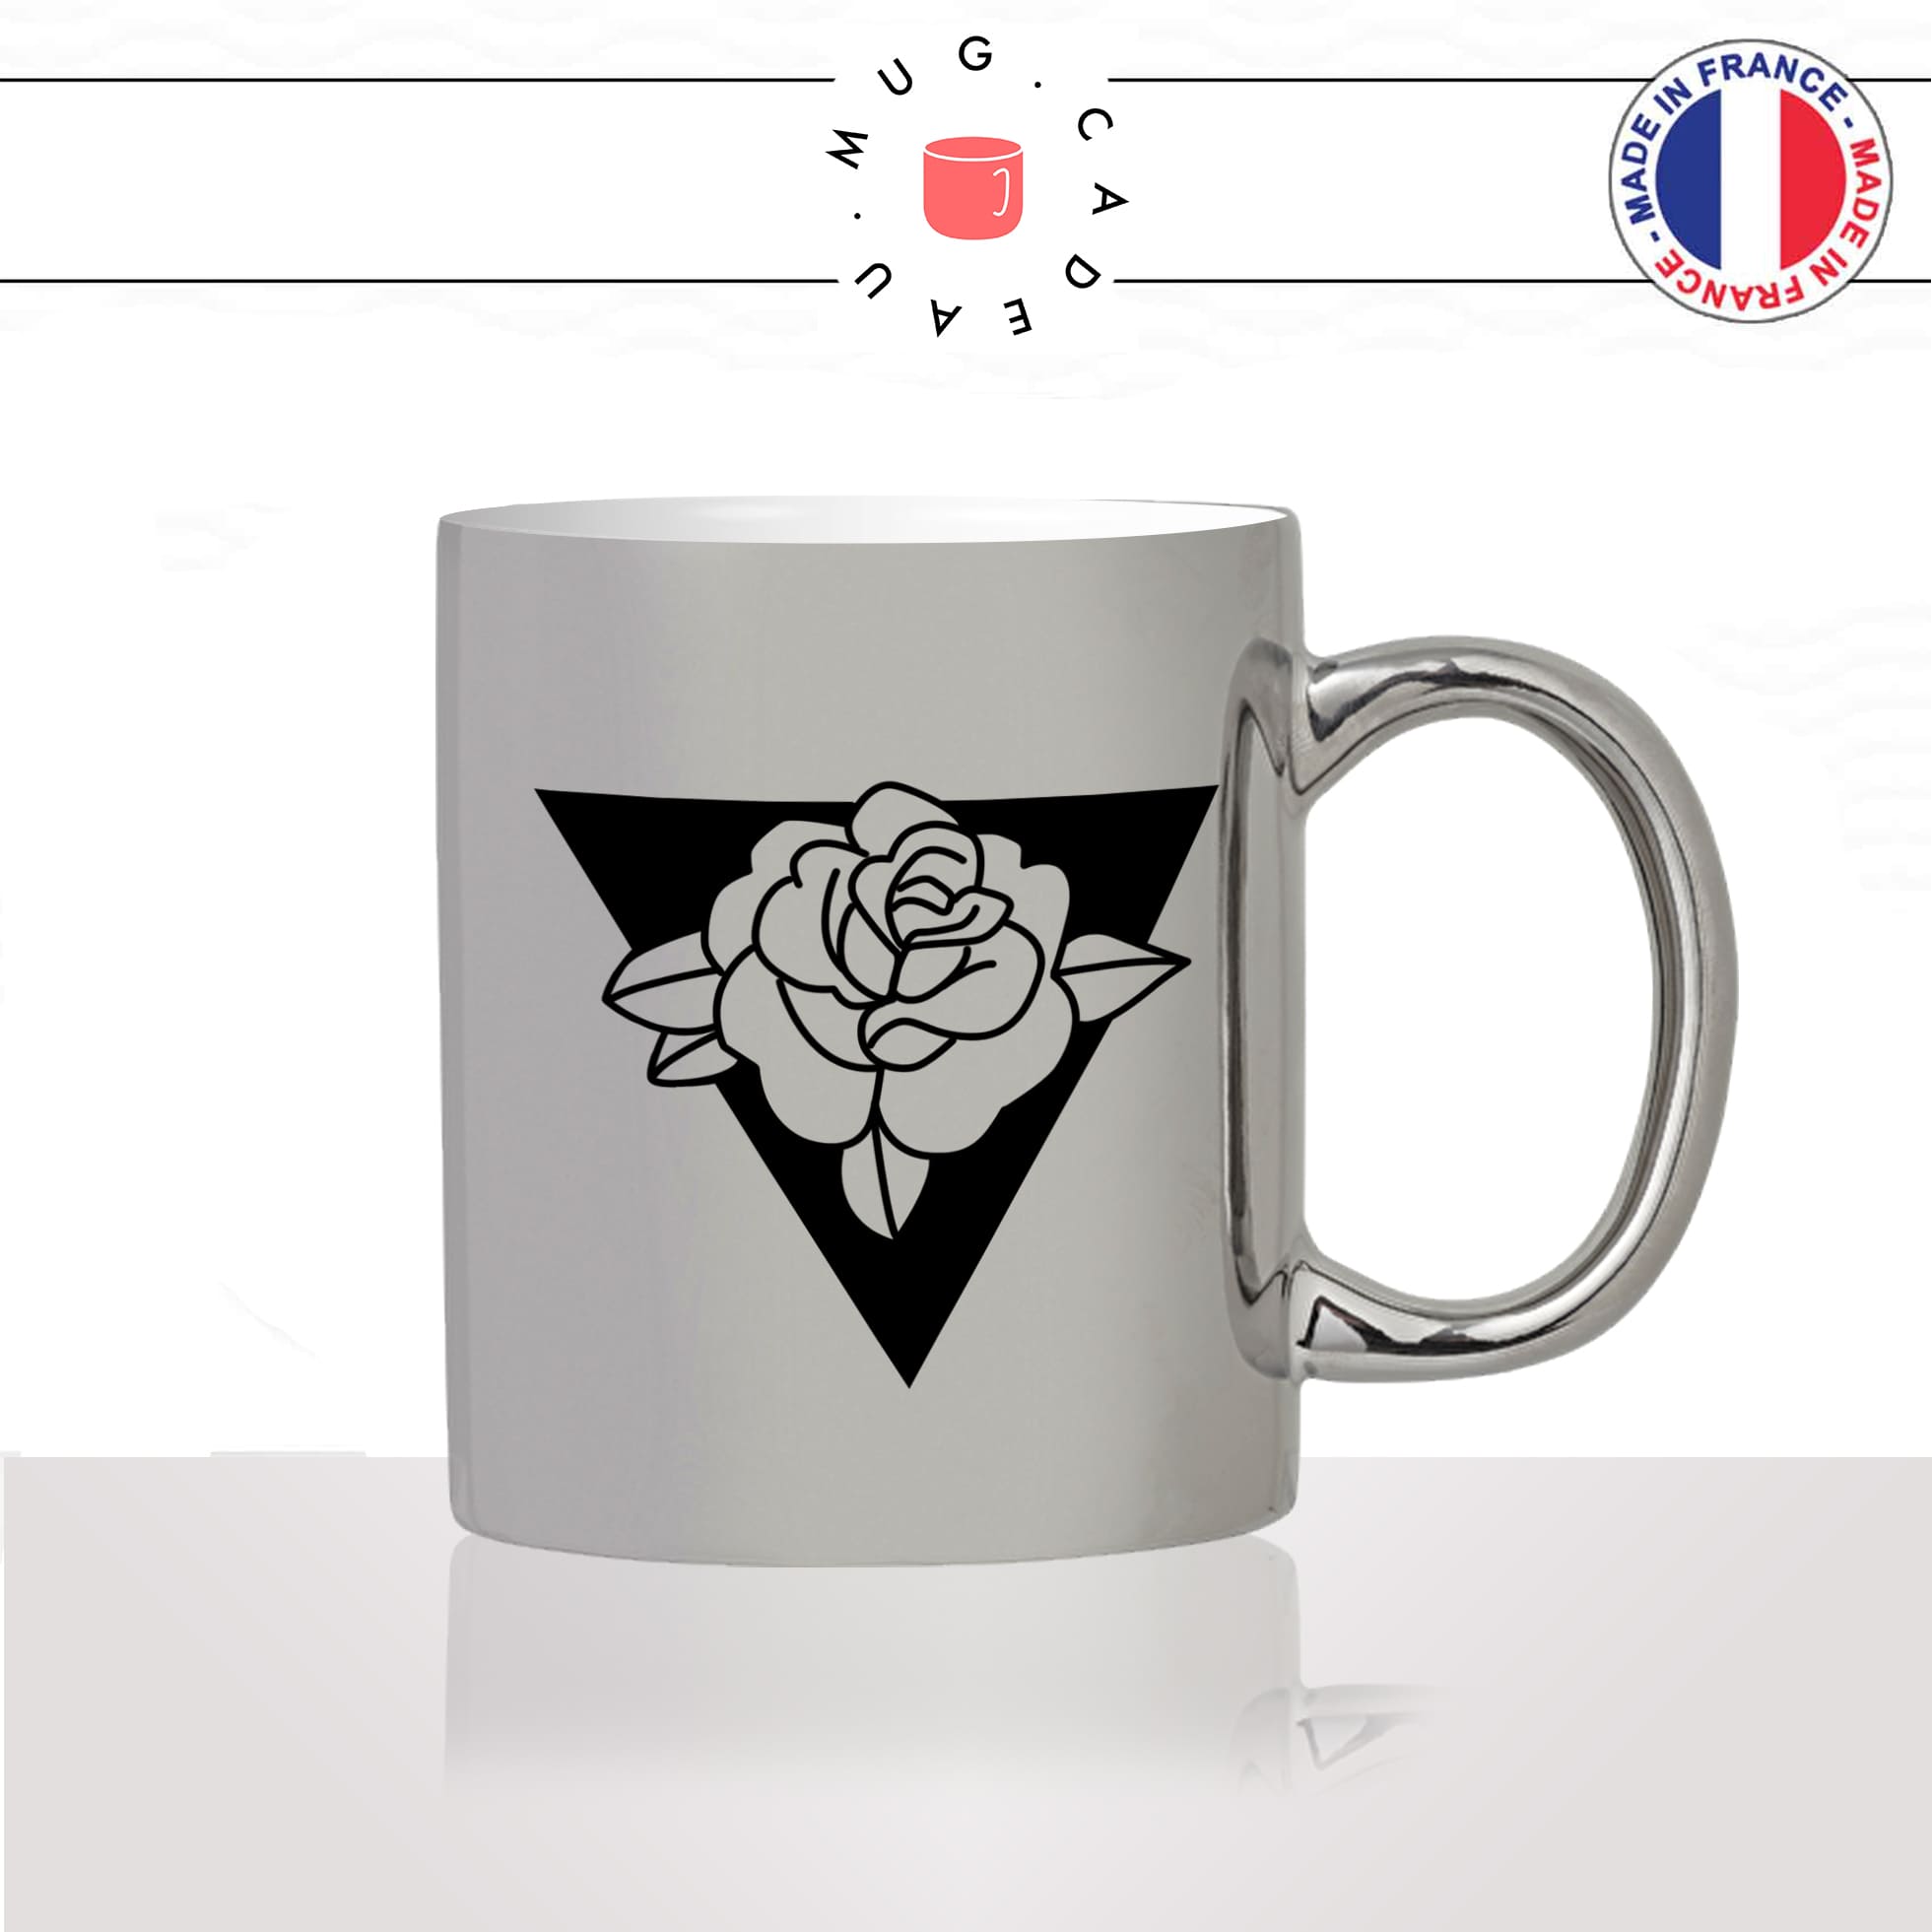 mug-tasse-argent-argenté-silver-fleur-fleurs-flower-bouton-de-rose-triangle-noir-dessin-decoration-mignon-joli-idée-cadeau-fun-cool-café-thé2